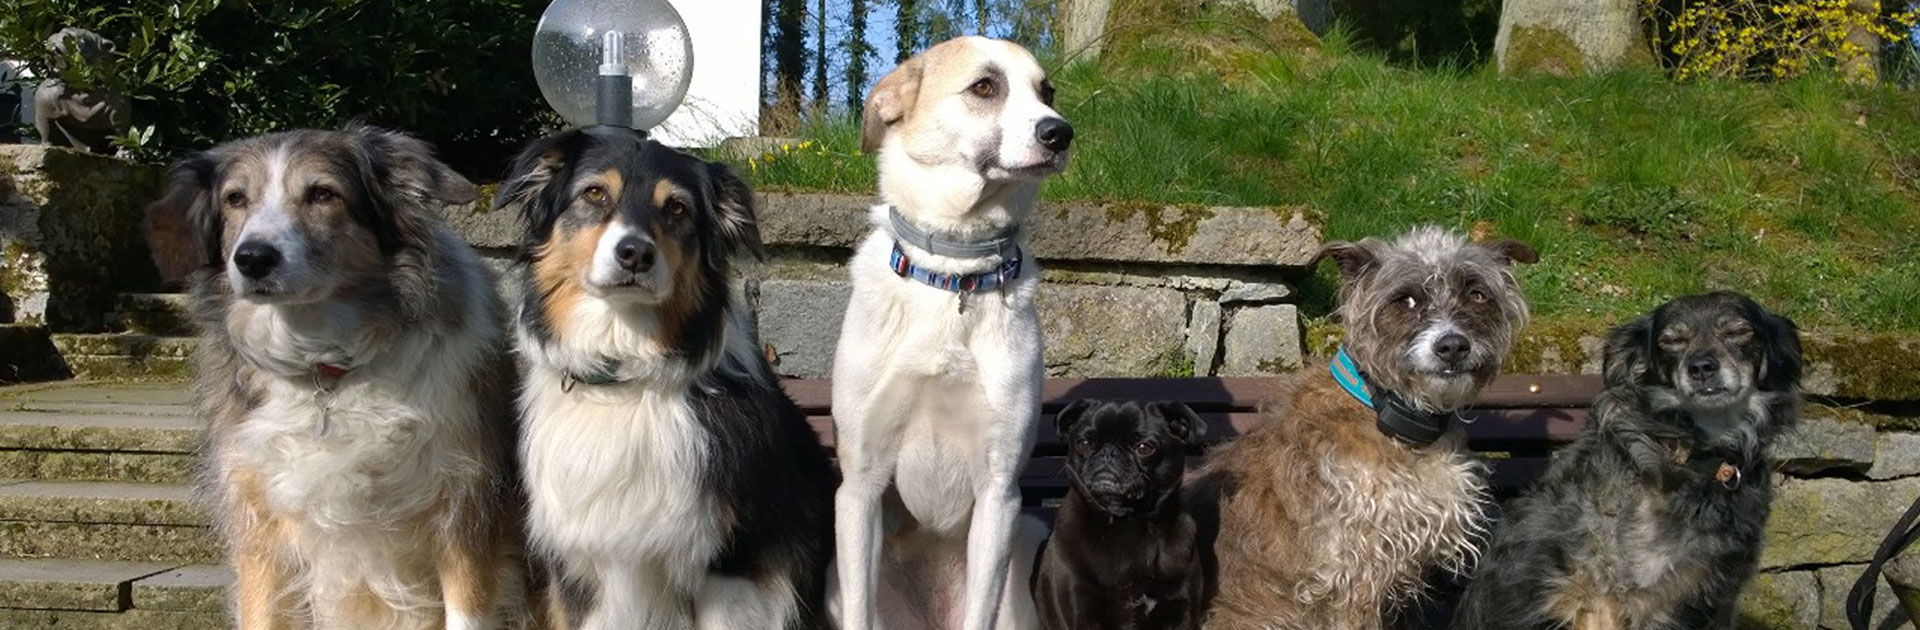 Sechs Hunde verschiedener Rassen sitzen auf einer Holzbank